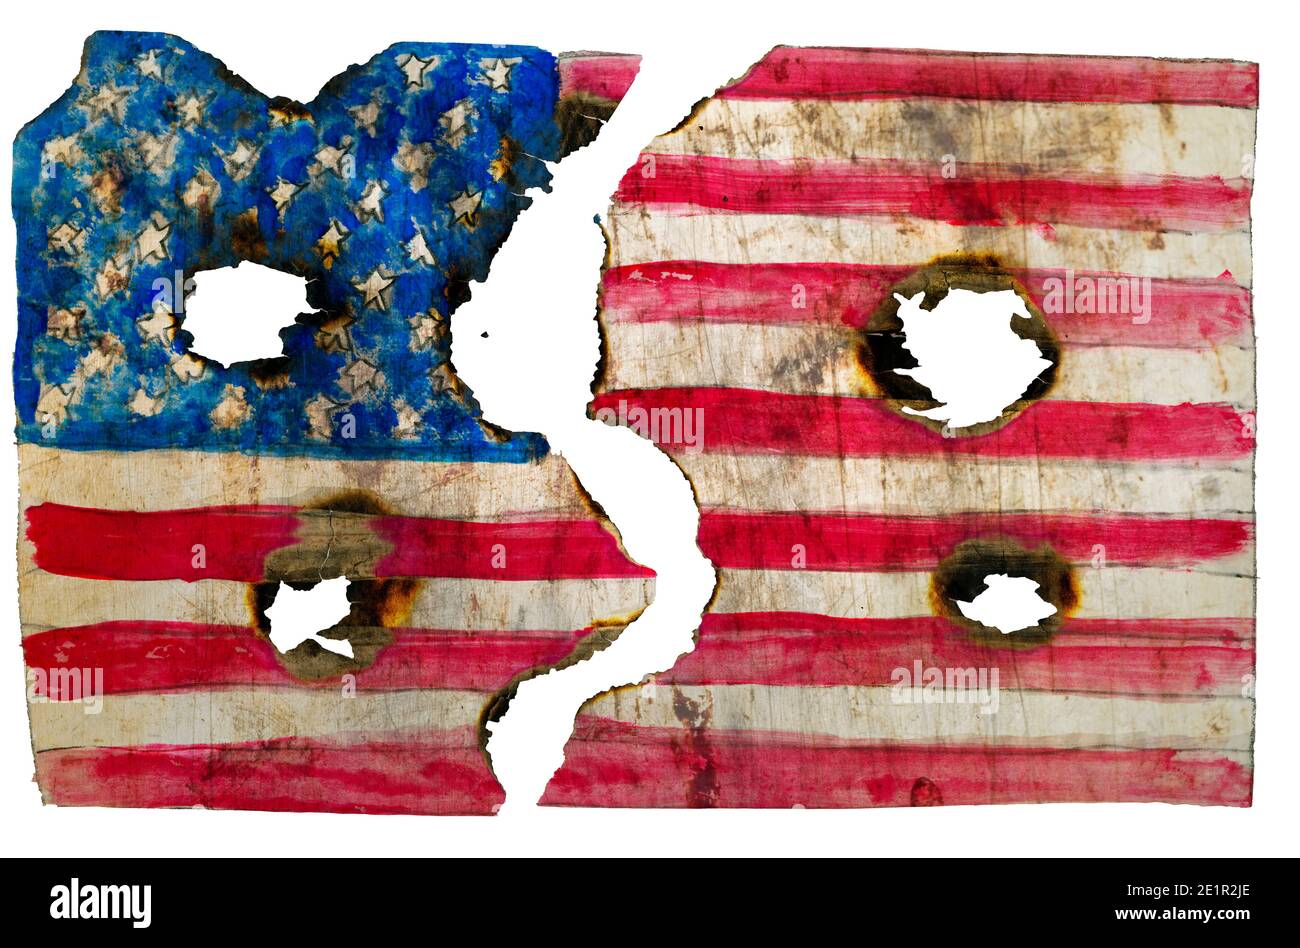 Drapeau américain grundy brûlé avec trous de balle, USA émeutes concept, isolé sur fond blanc Banque D'Images